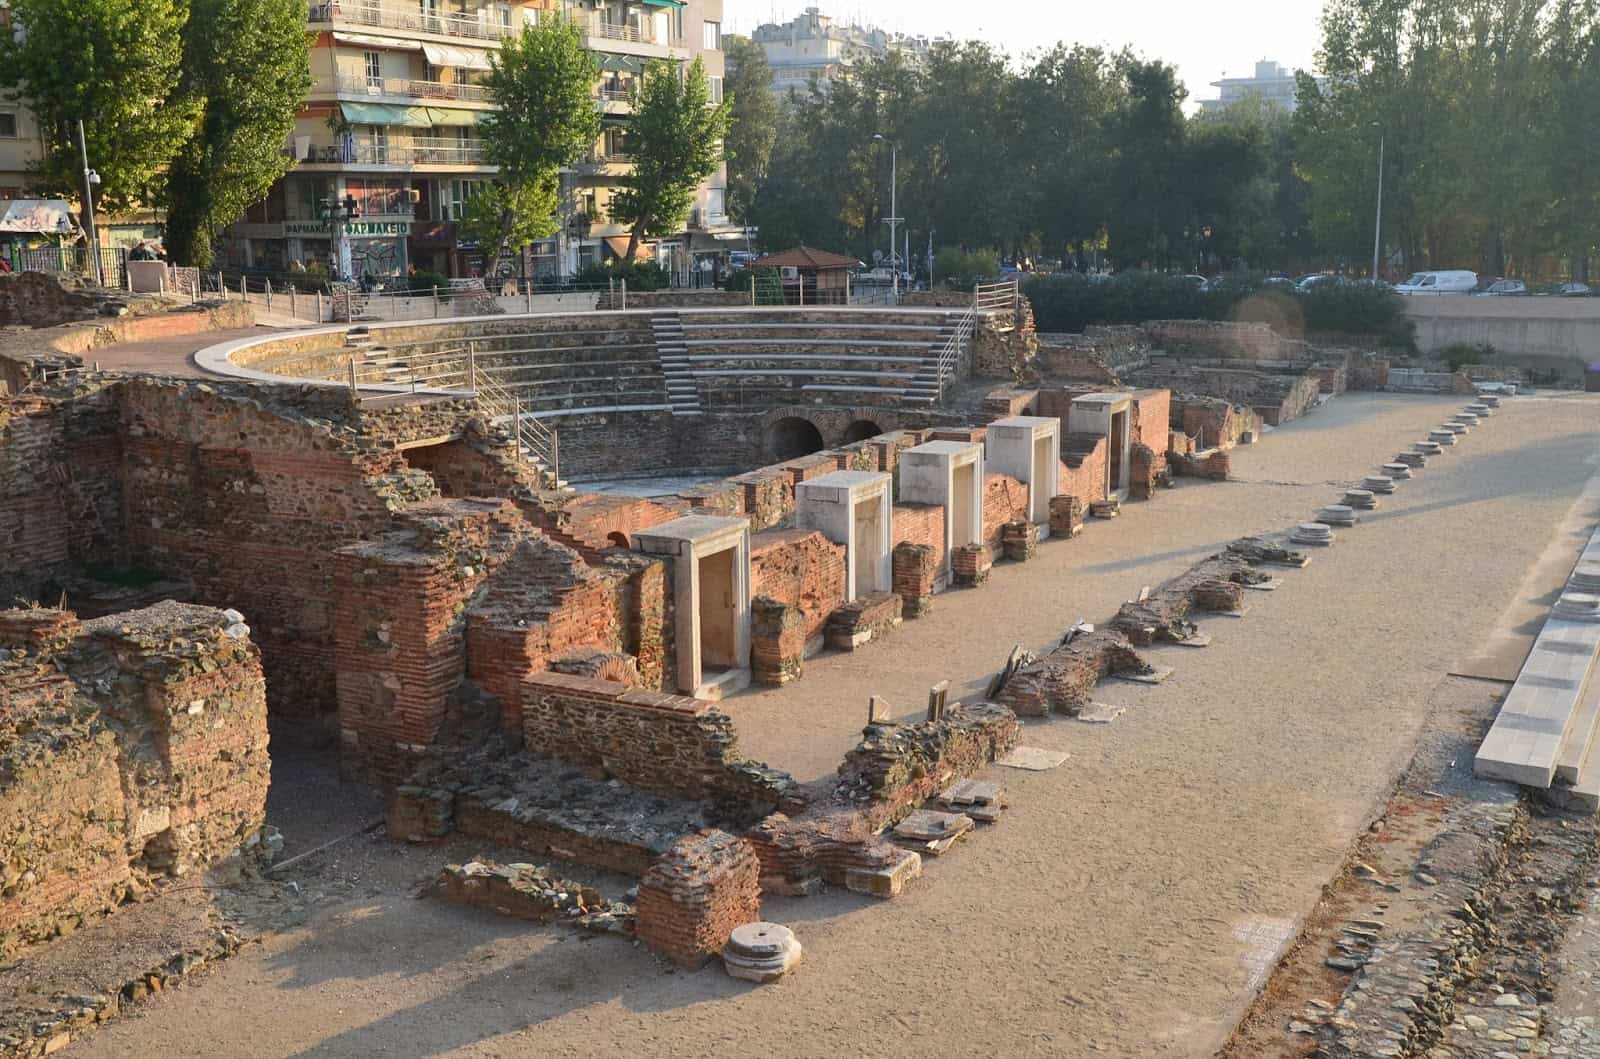 Small theatre at the Roman Forum in Thessaloniki, Greece